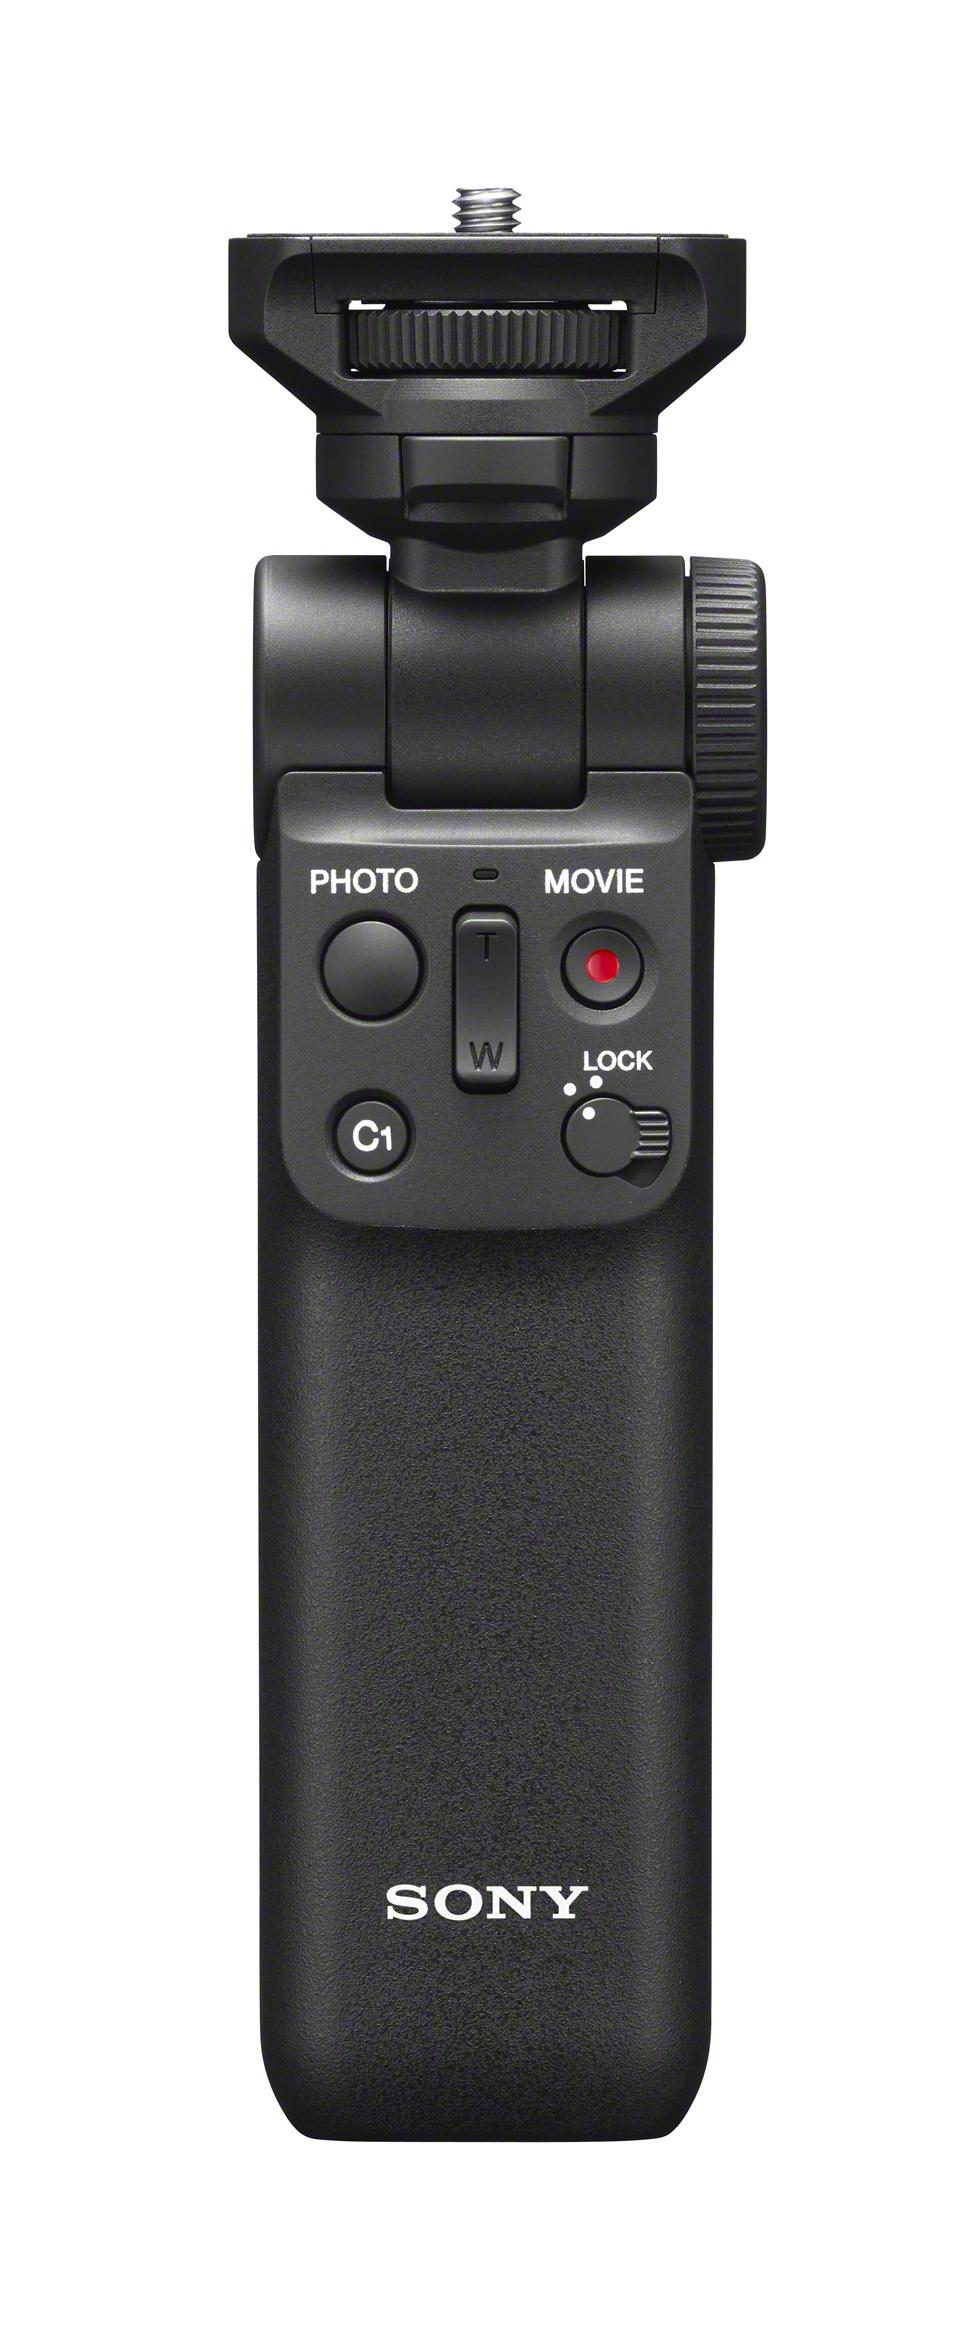 Vlogカメラはソニーの天下では。Bluetooth対応でケーブルレスな